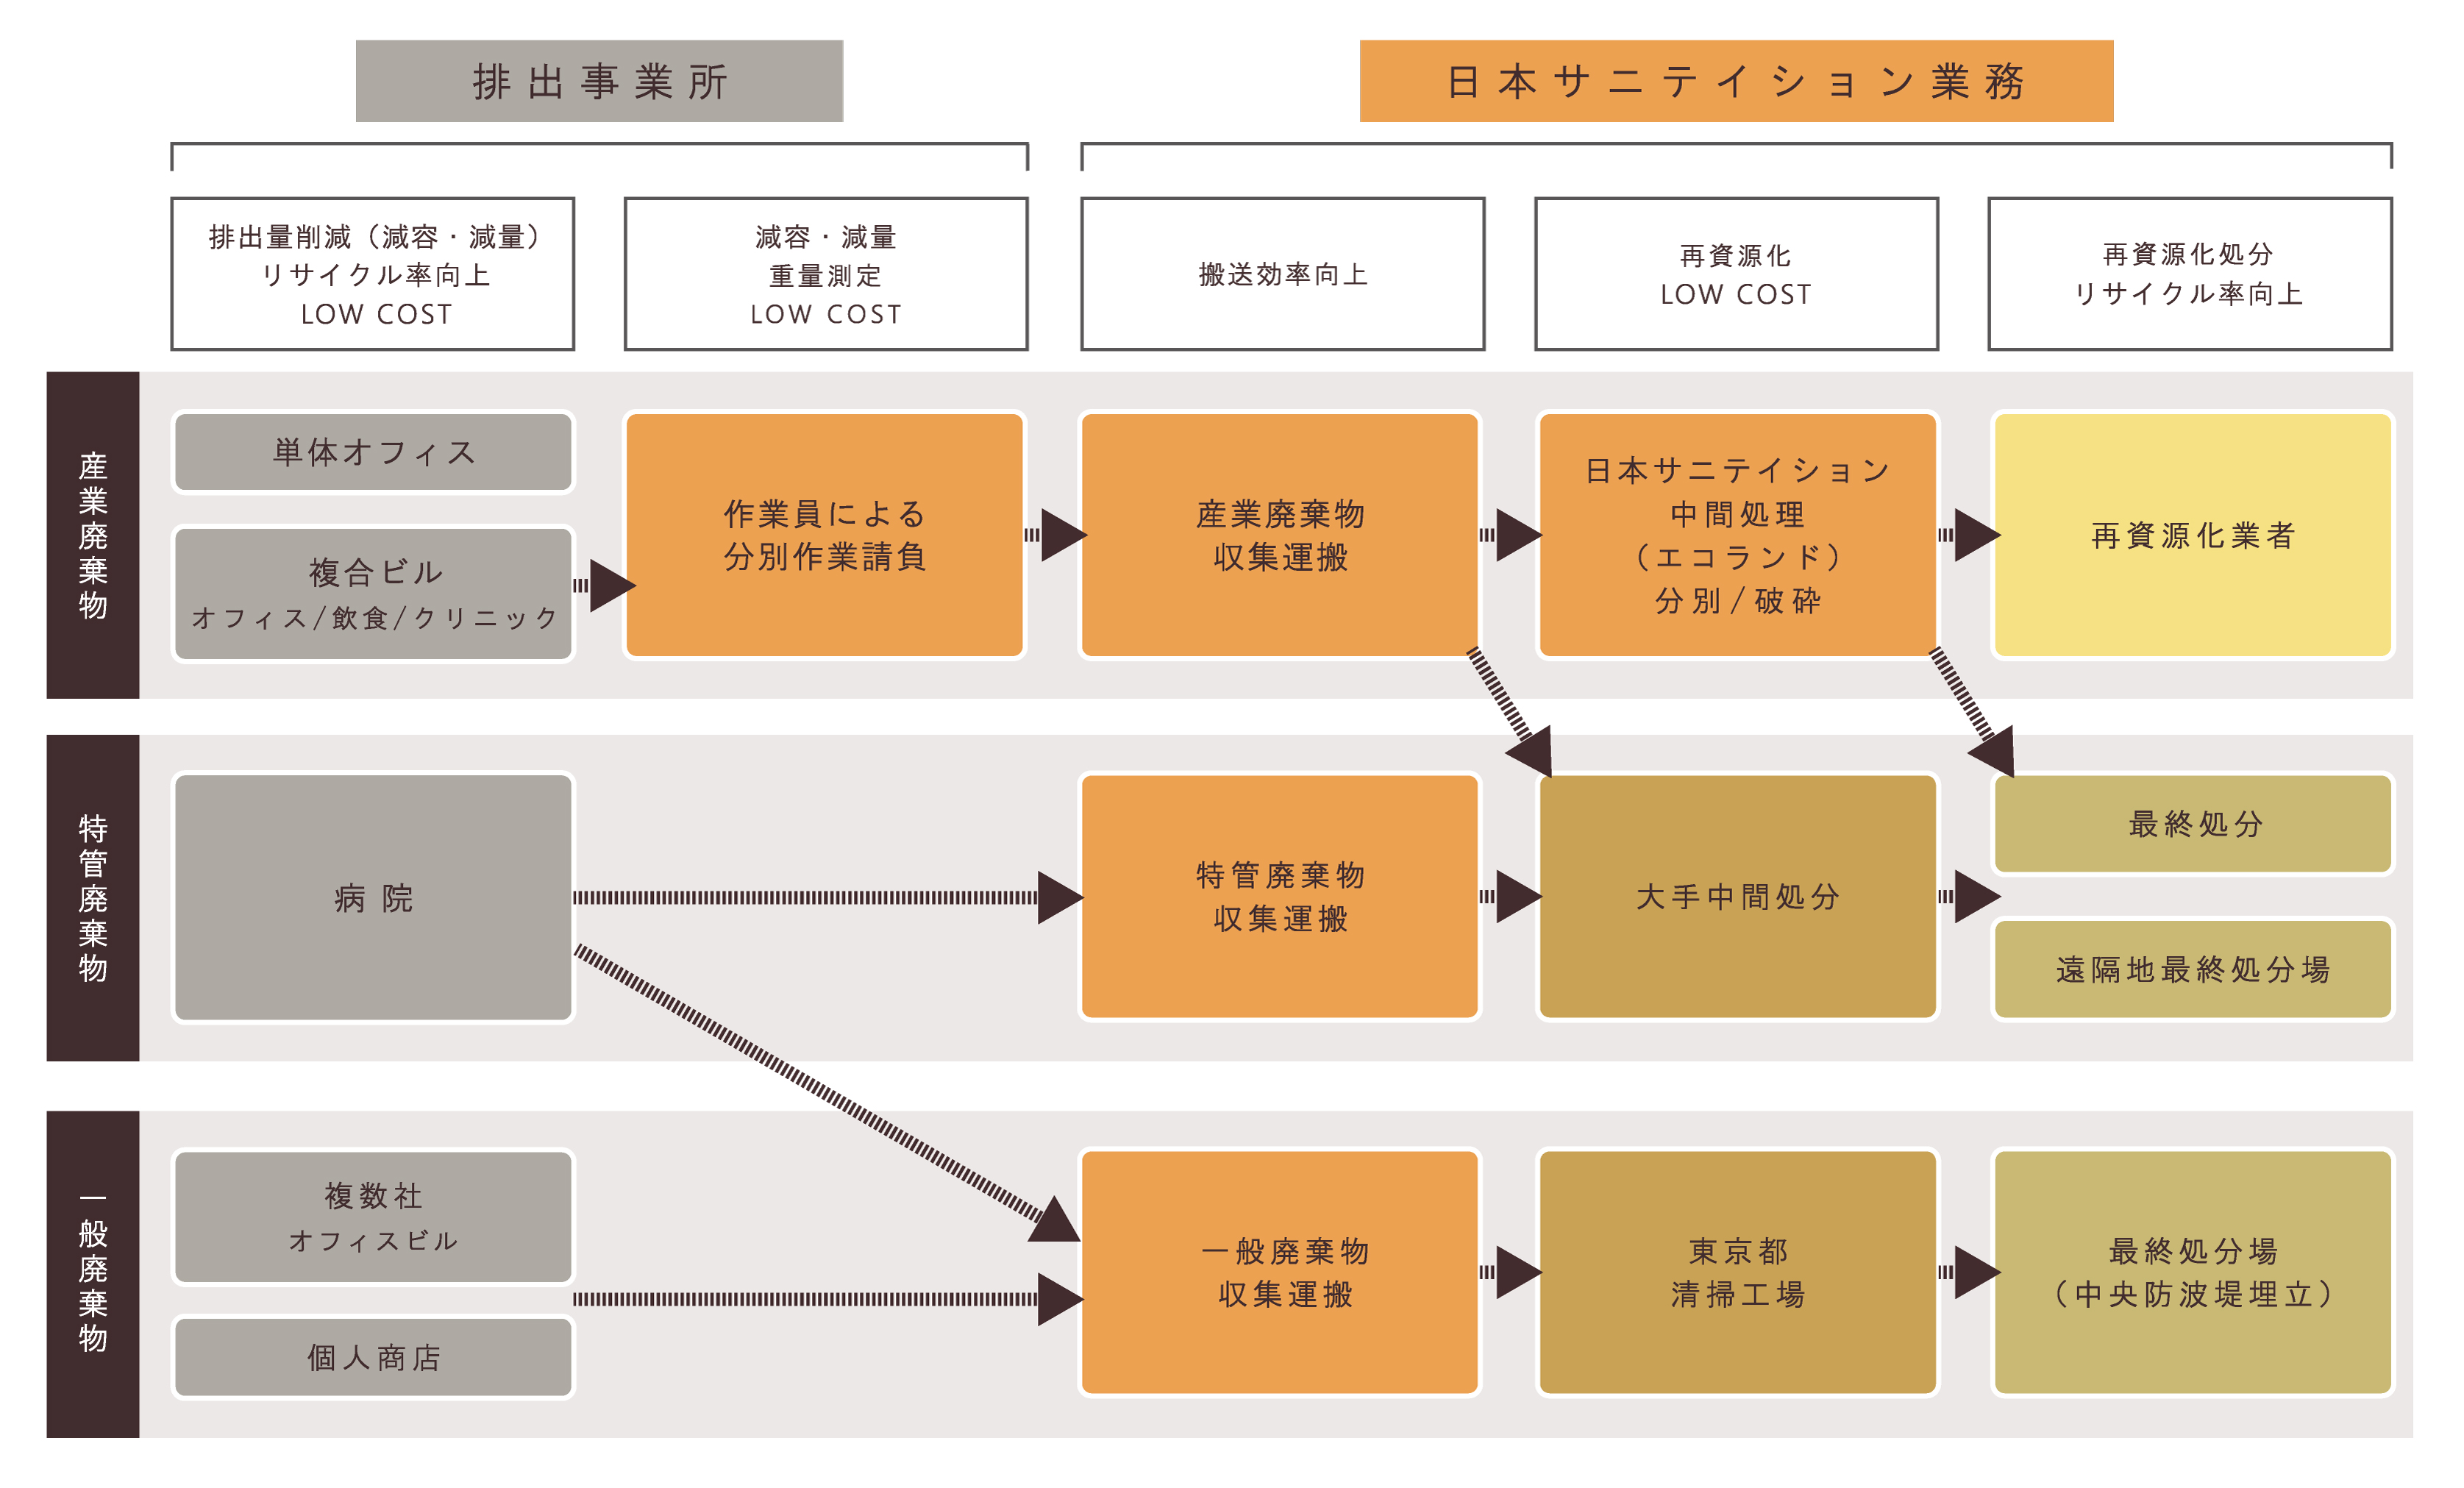 廃棄物の流れと日本サニテイションの役割全体像の図（産業廃棄物、特管廃棄物、一般廃棄物）